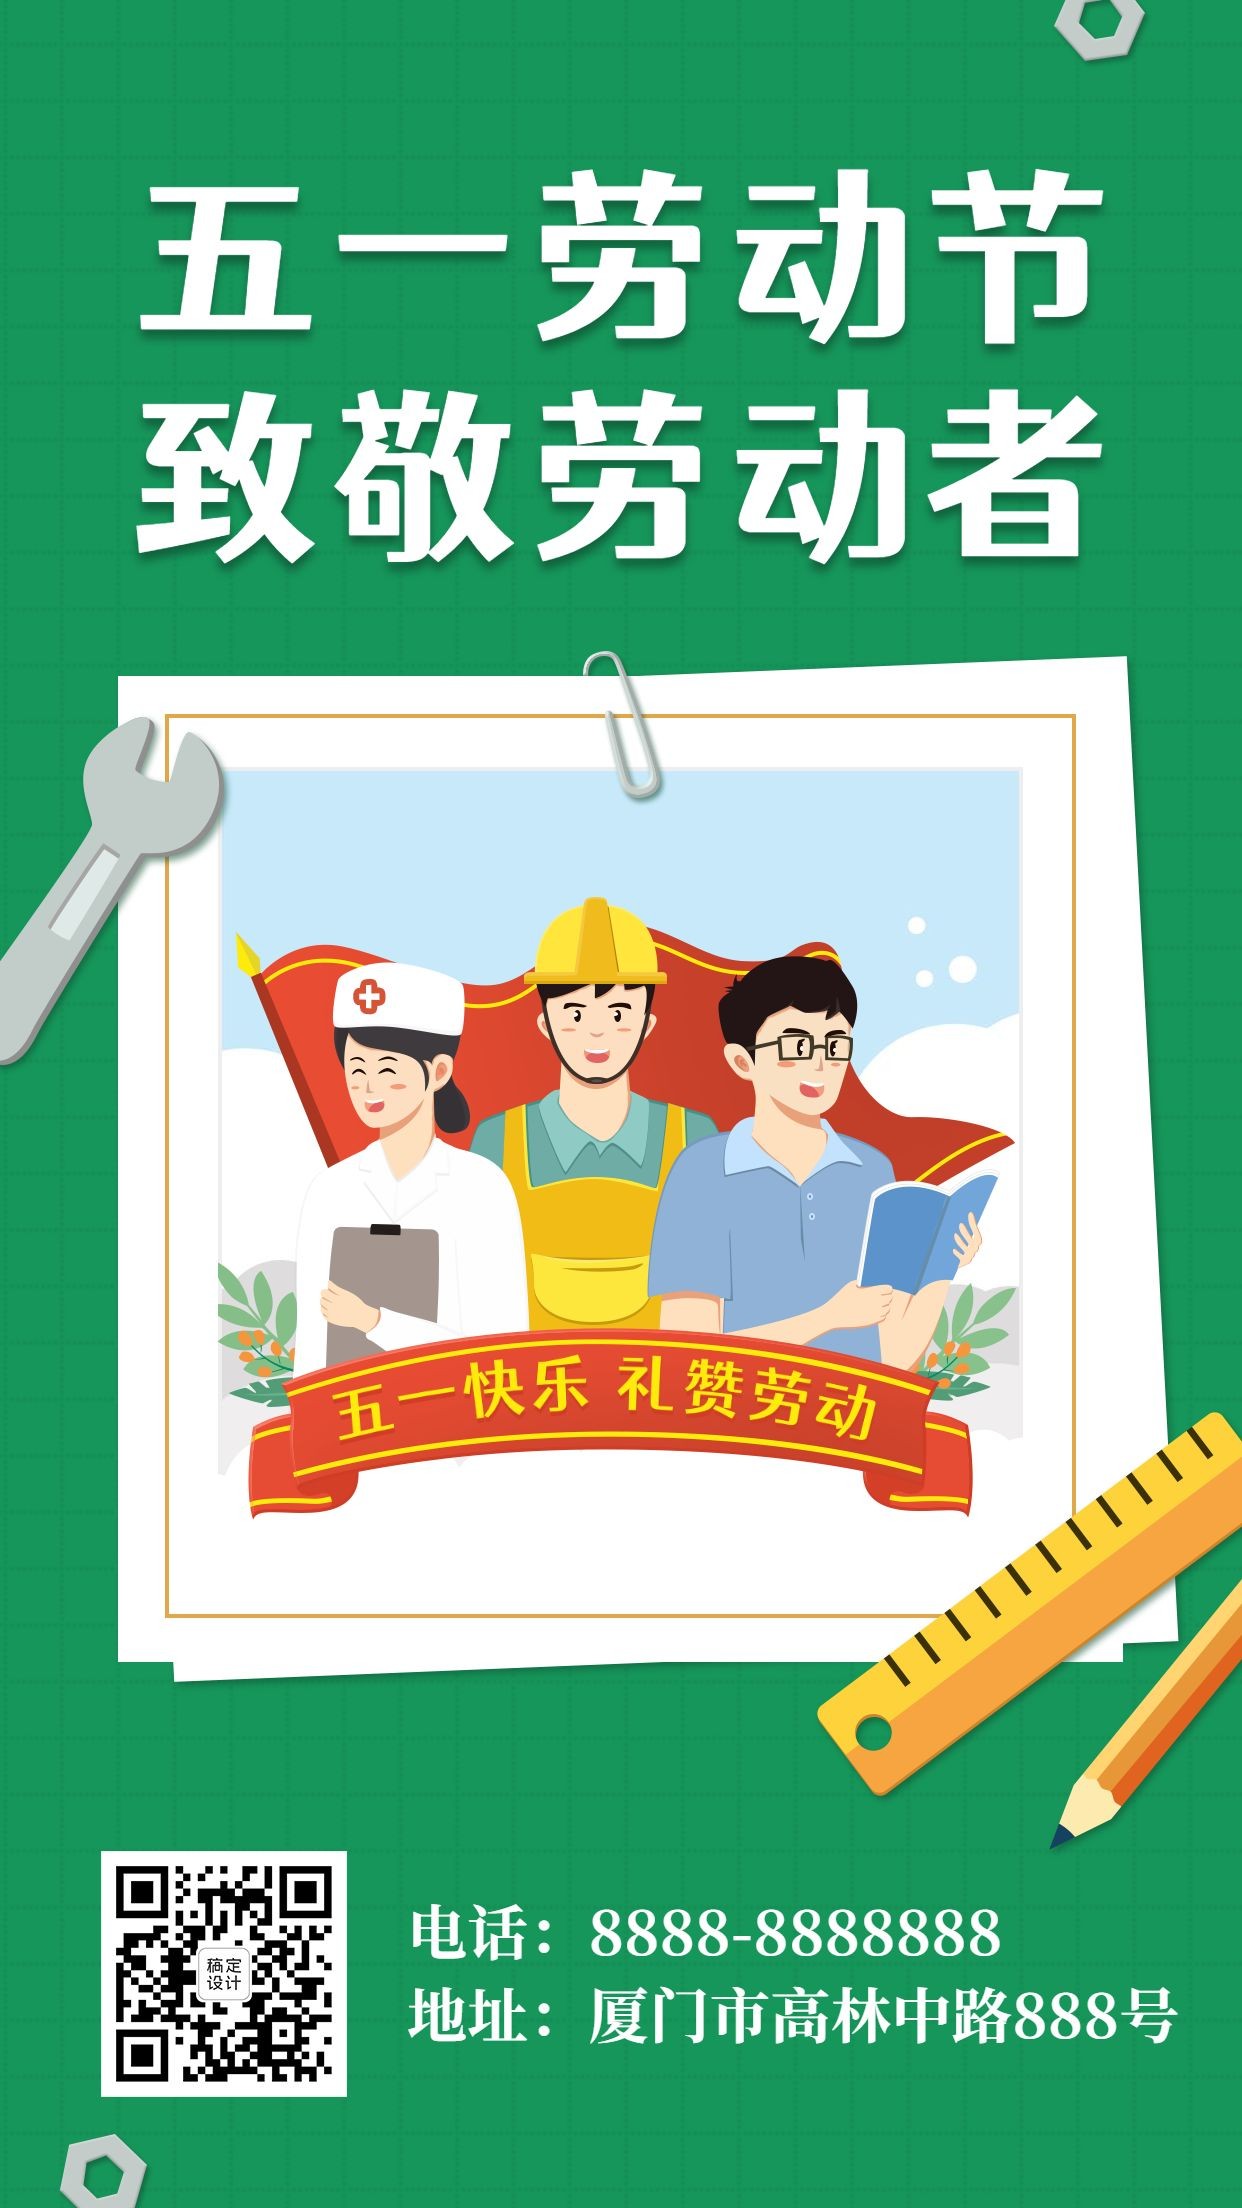 劳动节节日祝福手机海报卡通手绘预览效果